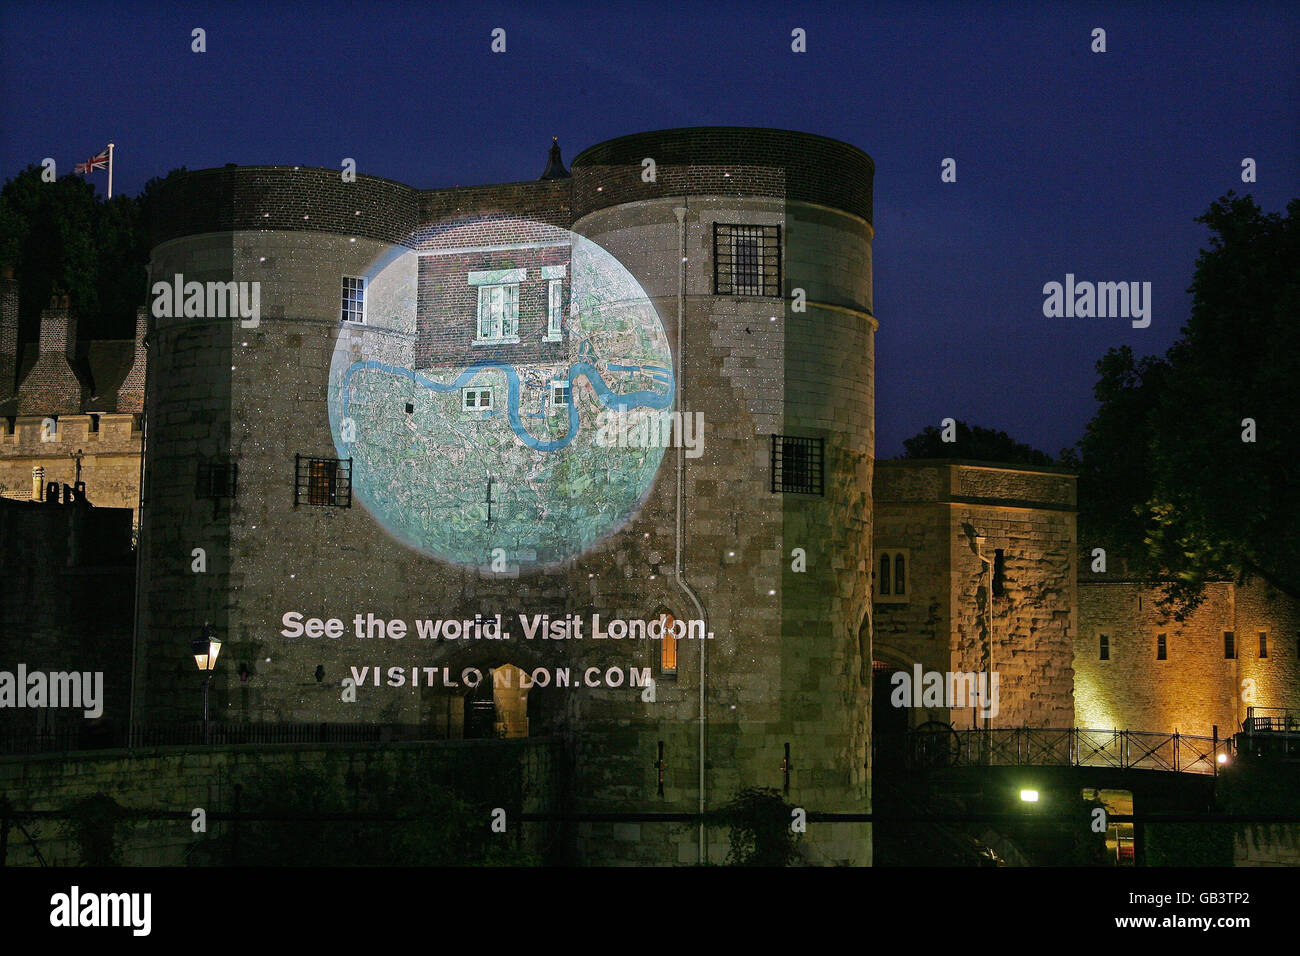 Une image de la nouvelle campagne publicitaire mondiale Visit London, « Voir le monde », est projetée sur la Tour de Londres. Banque D'Images